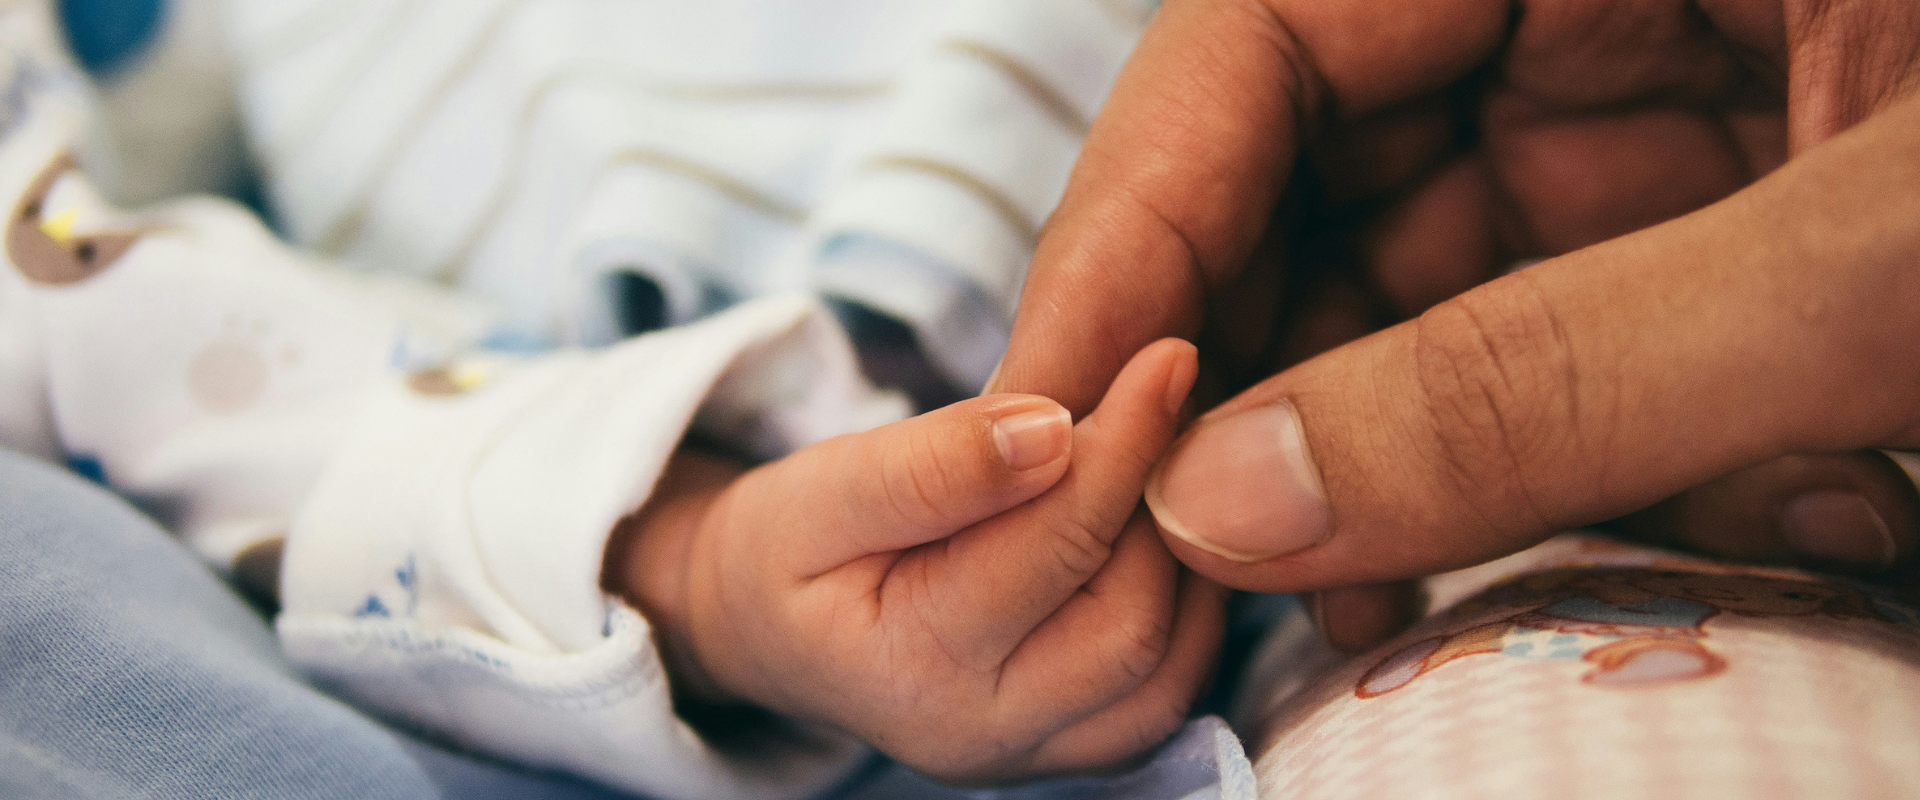 Geburtsschäden durch Sauerstoffmangel: Ursachen, Folgen und rechtliche Aspekte Thumbnail